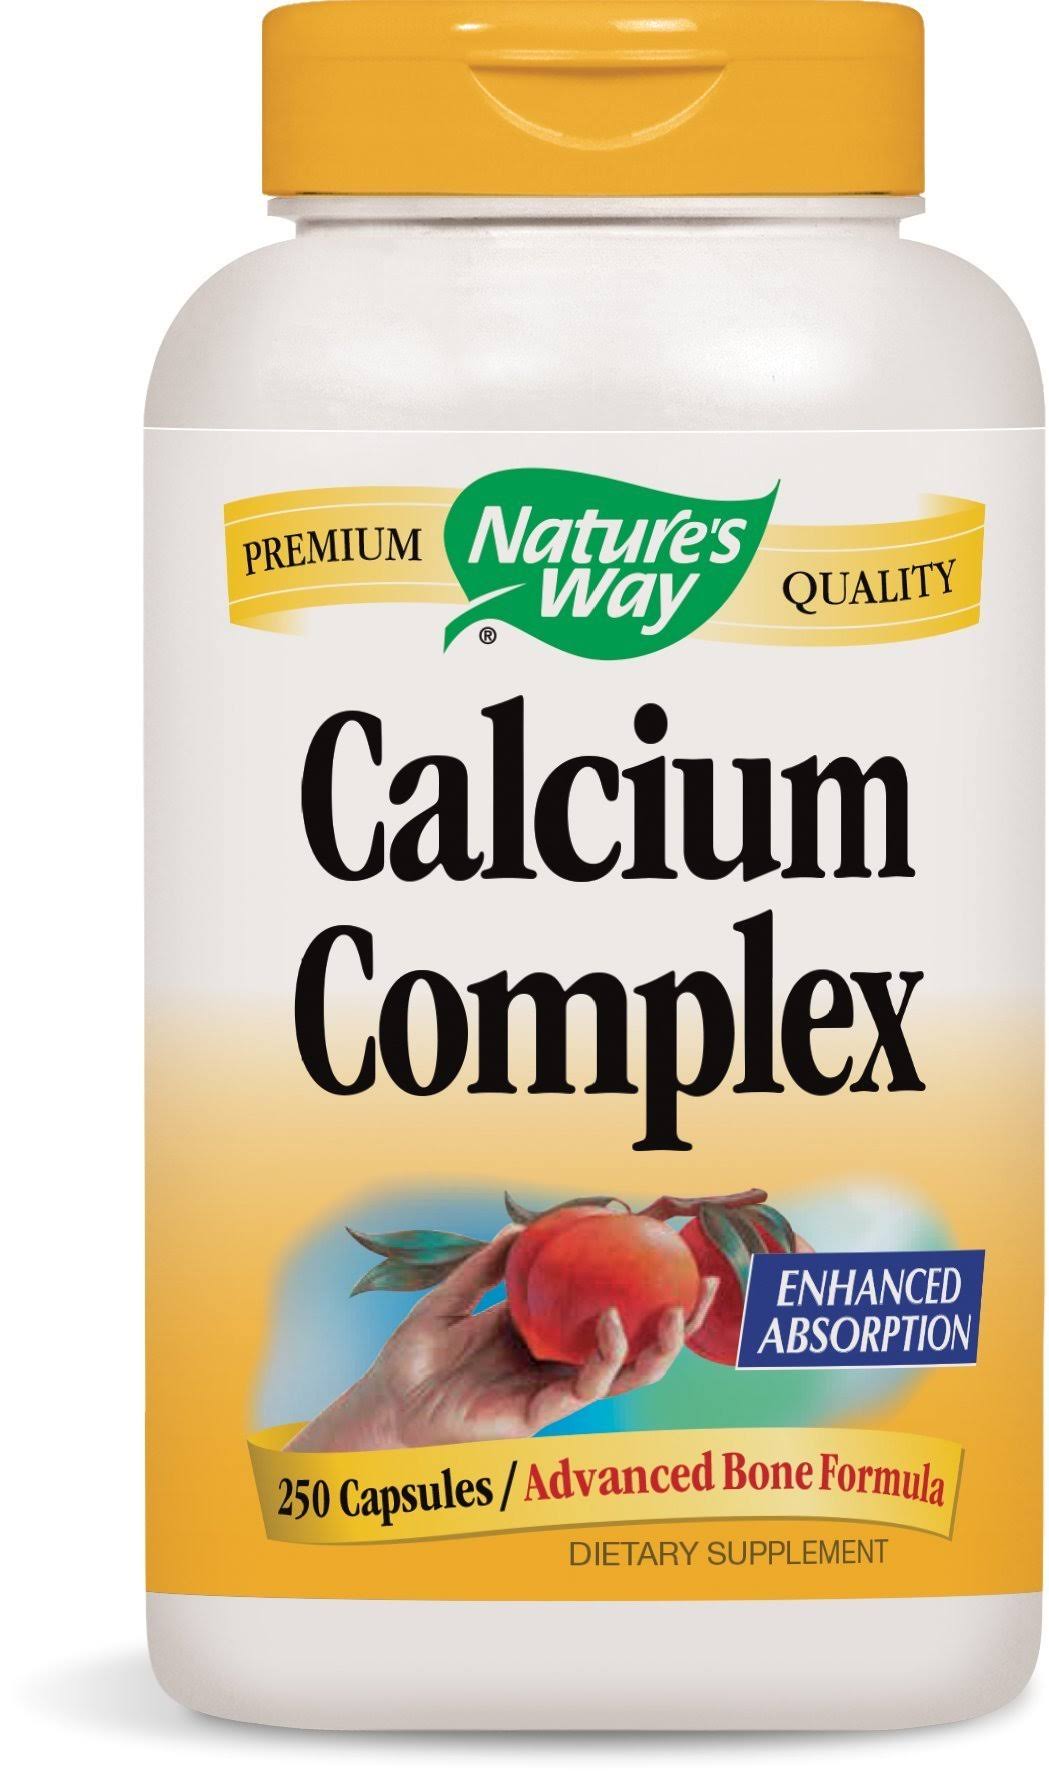 Nature's Way Calcium Complex Bone Formula Supplement - 250 Capsules